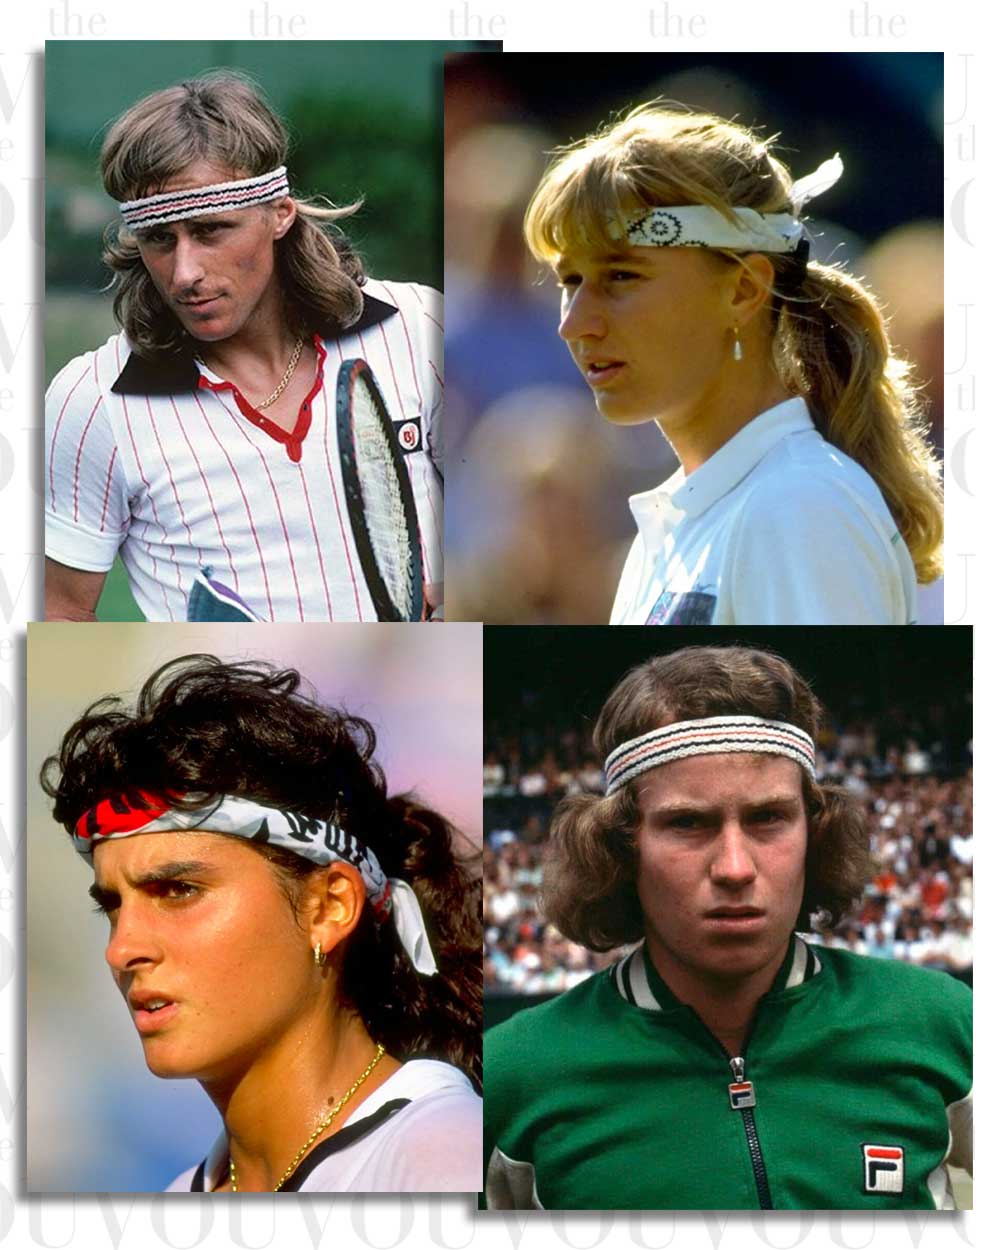 Tennis Headbands of the 80s